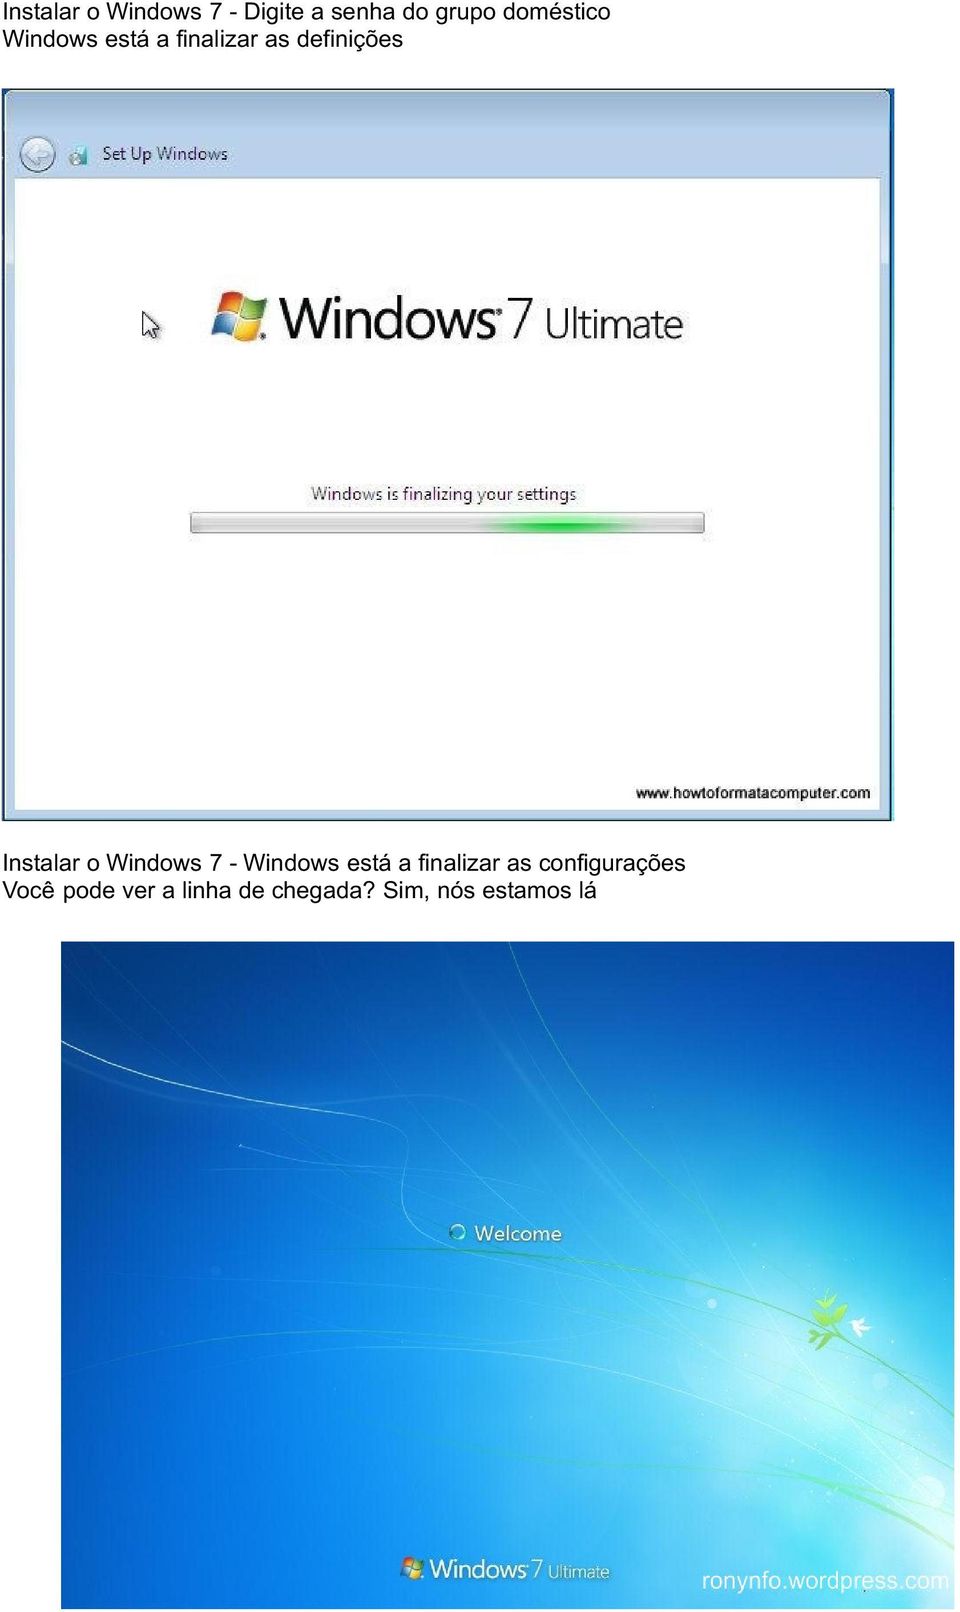 Instalar o Windows 7 - Windows está a finalizar as